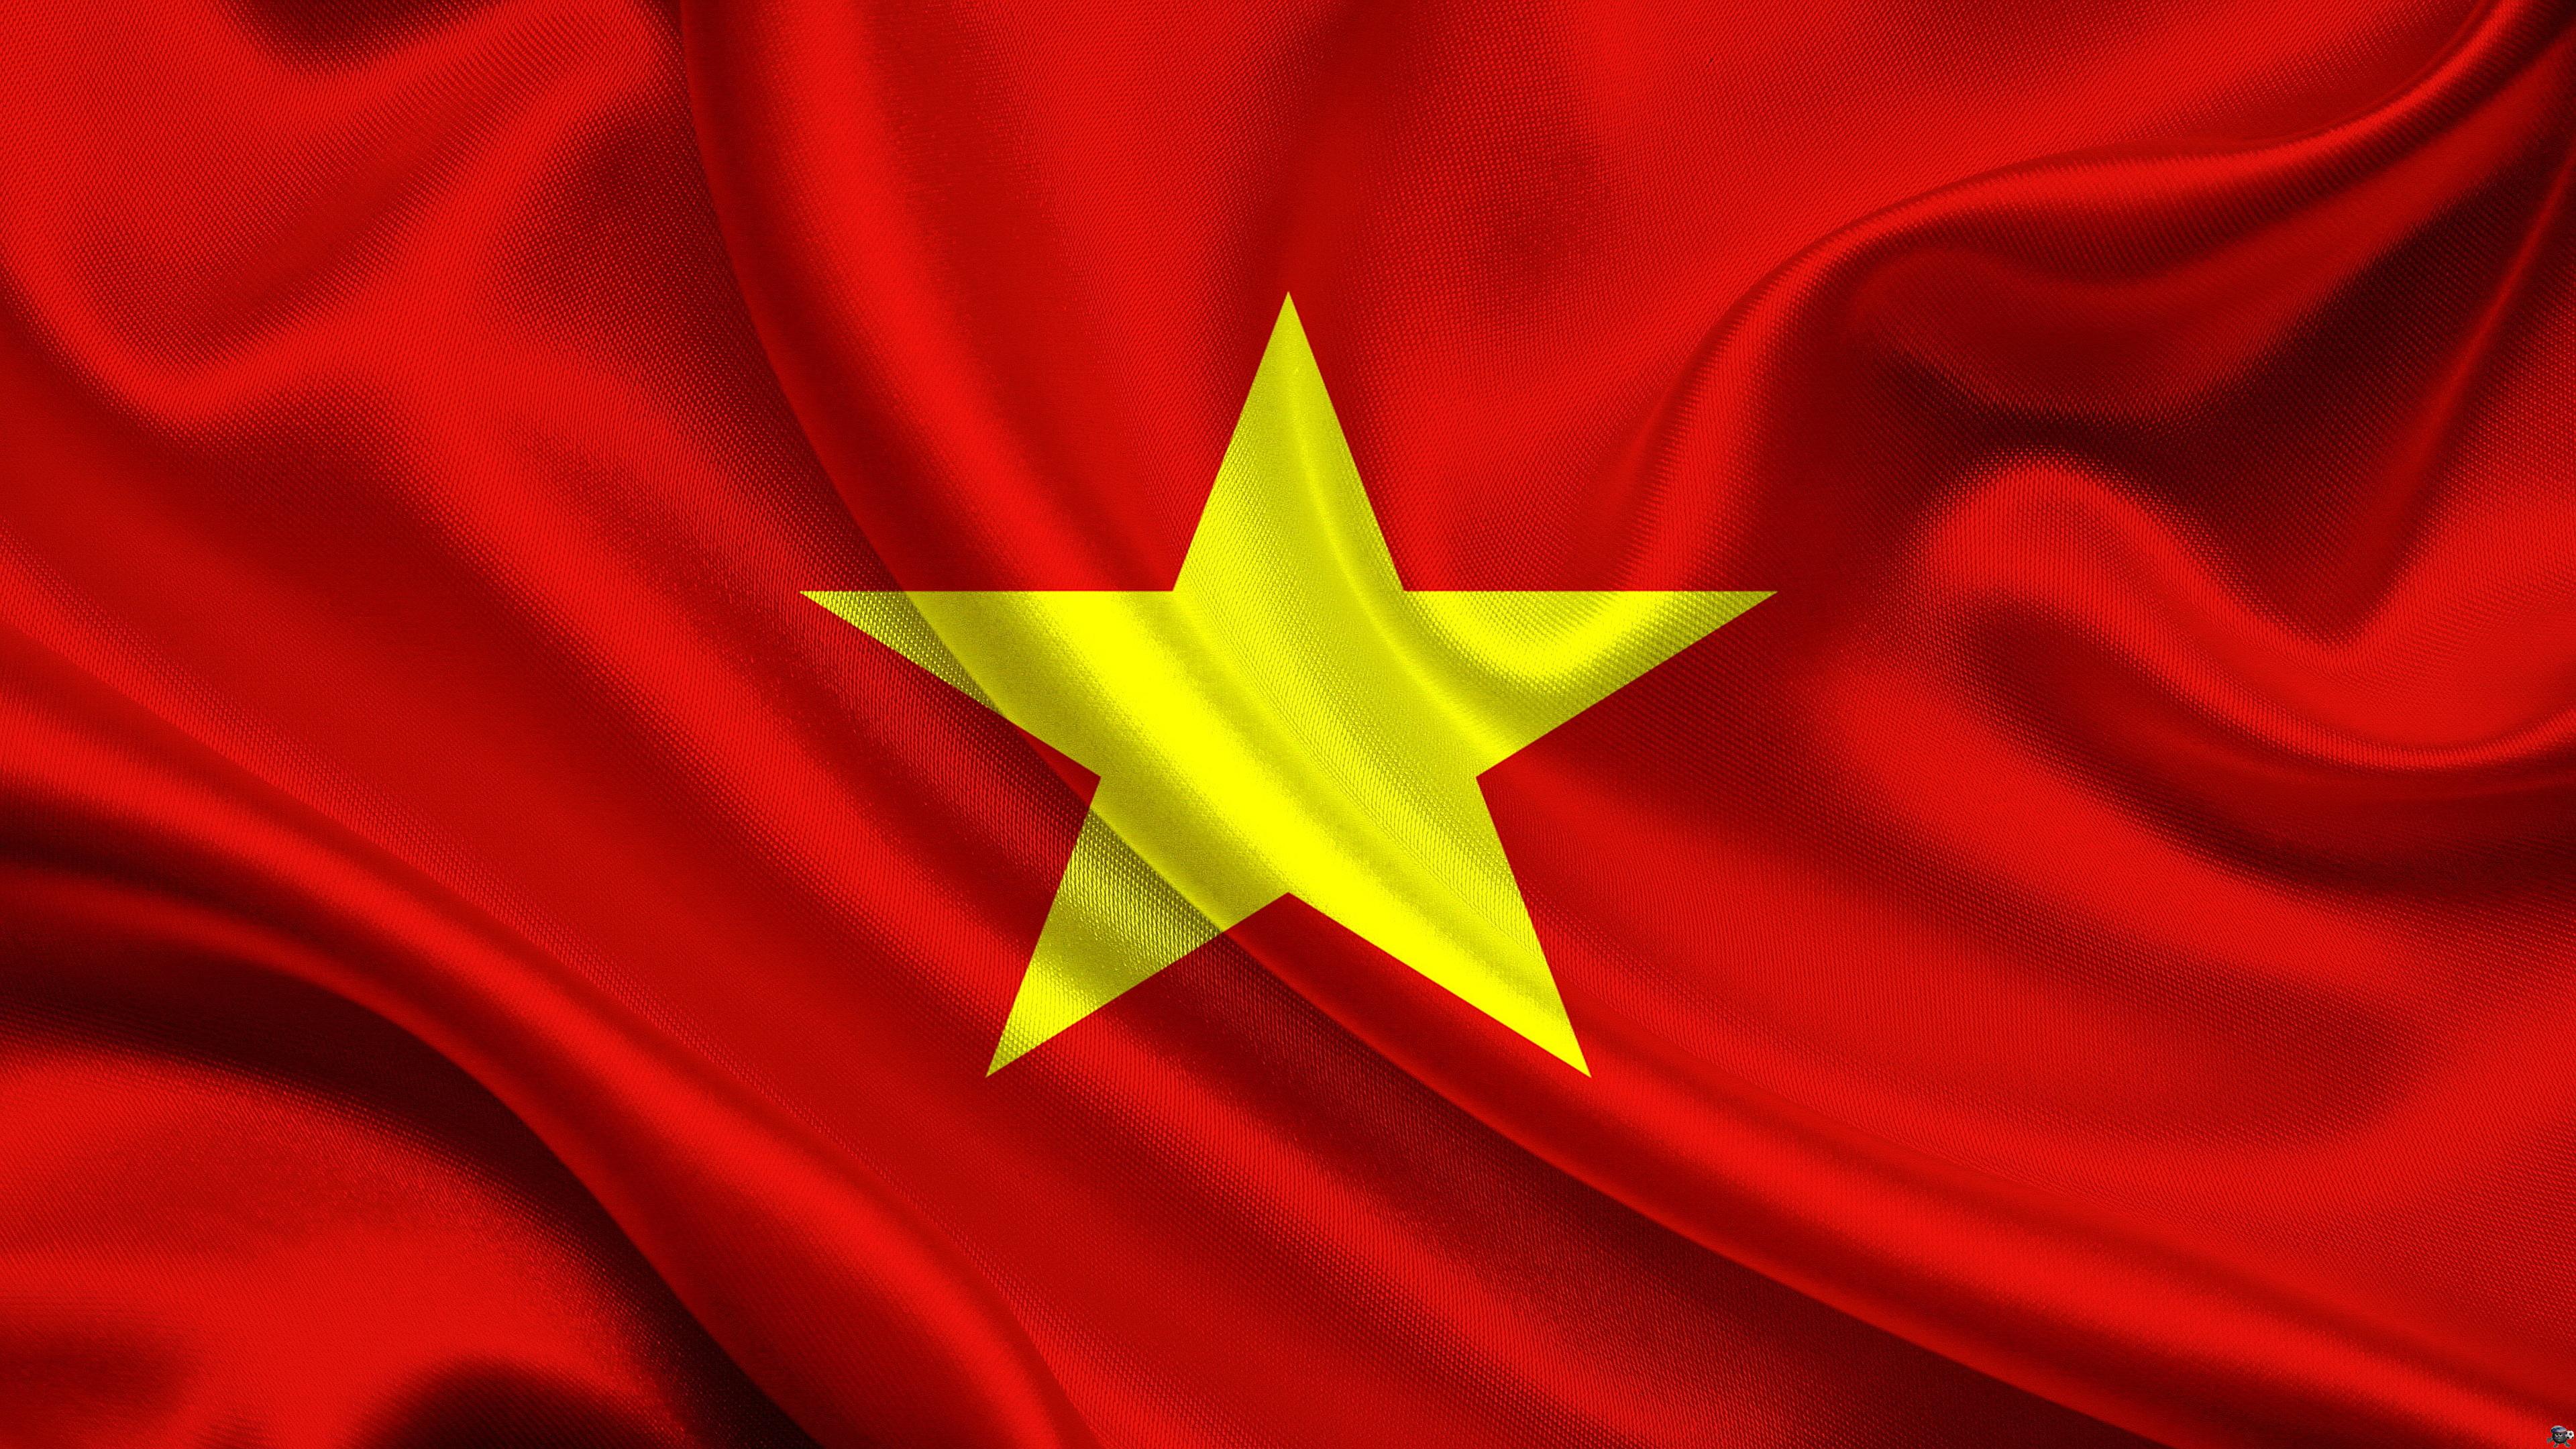 Bạn muốn cảm nhận tình yêu đối với đất nước mình hơn bao giờ hết? Hãy thưởng thức những hình nền với cờ Việt Nam đẹp mắt trên điện thoại của bạn. Chúng sẽ mang đến sự tự hào về quốc gia và đồng thời tạo cảm hứng để tiếp tục nỗ lực phát triển đất nước.